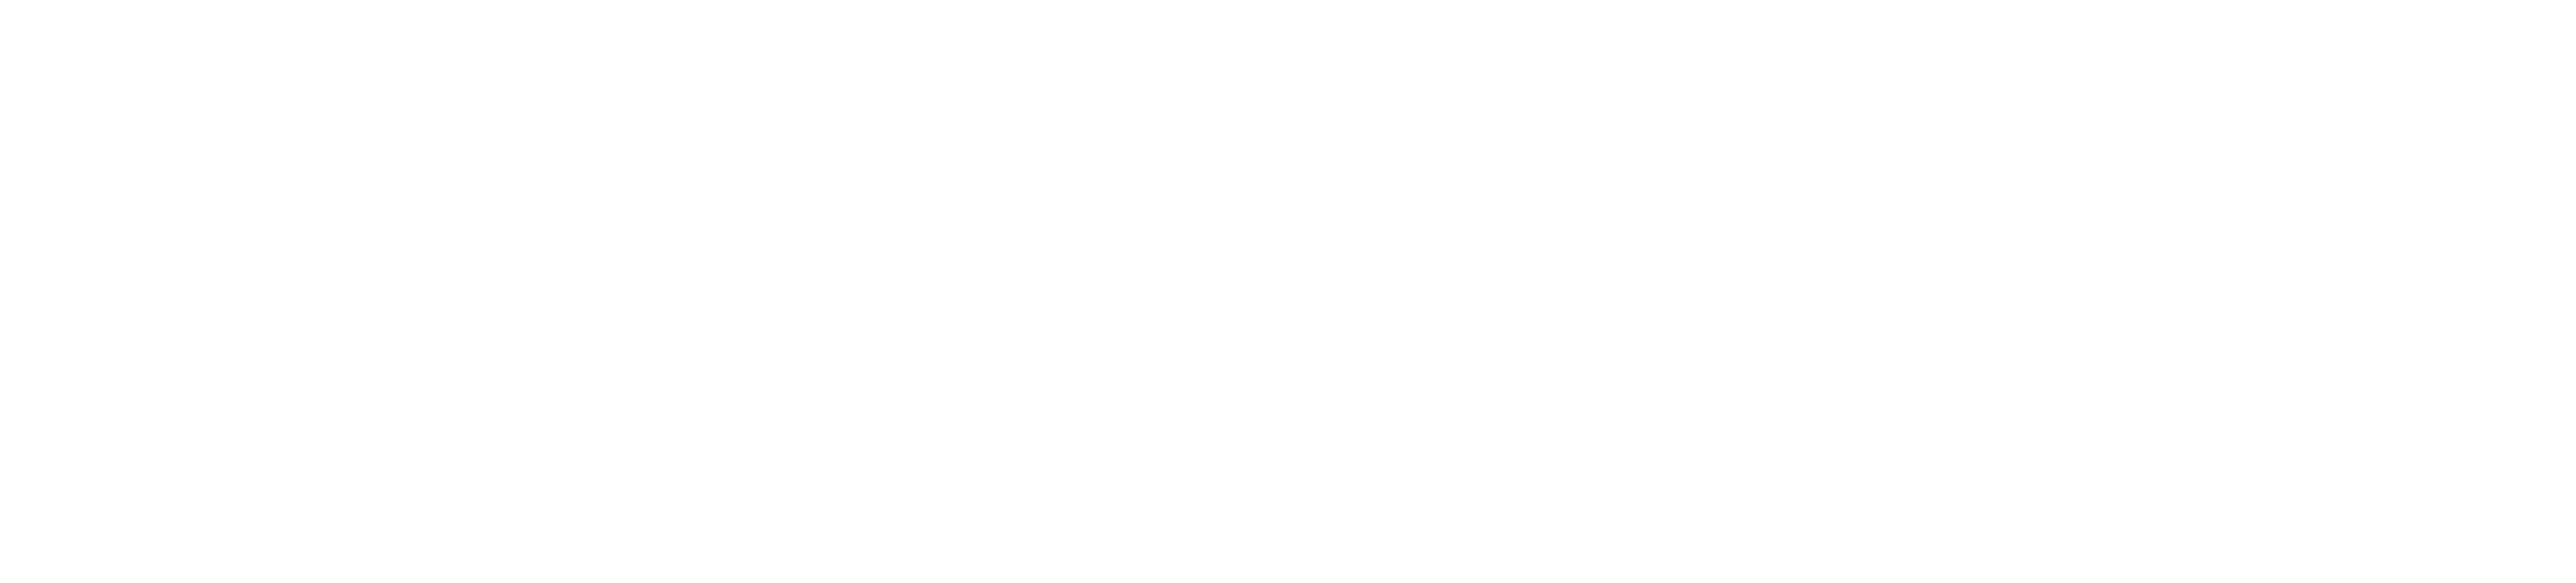 VectorSolutions_Logo_Wht-1